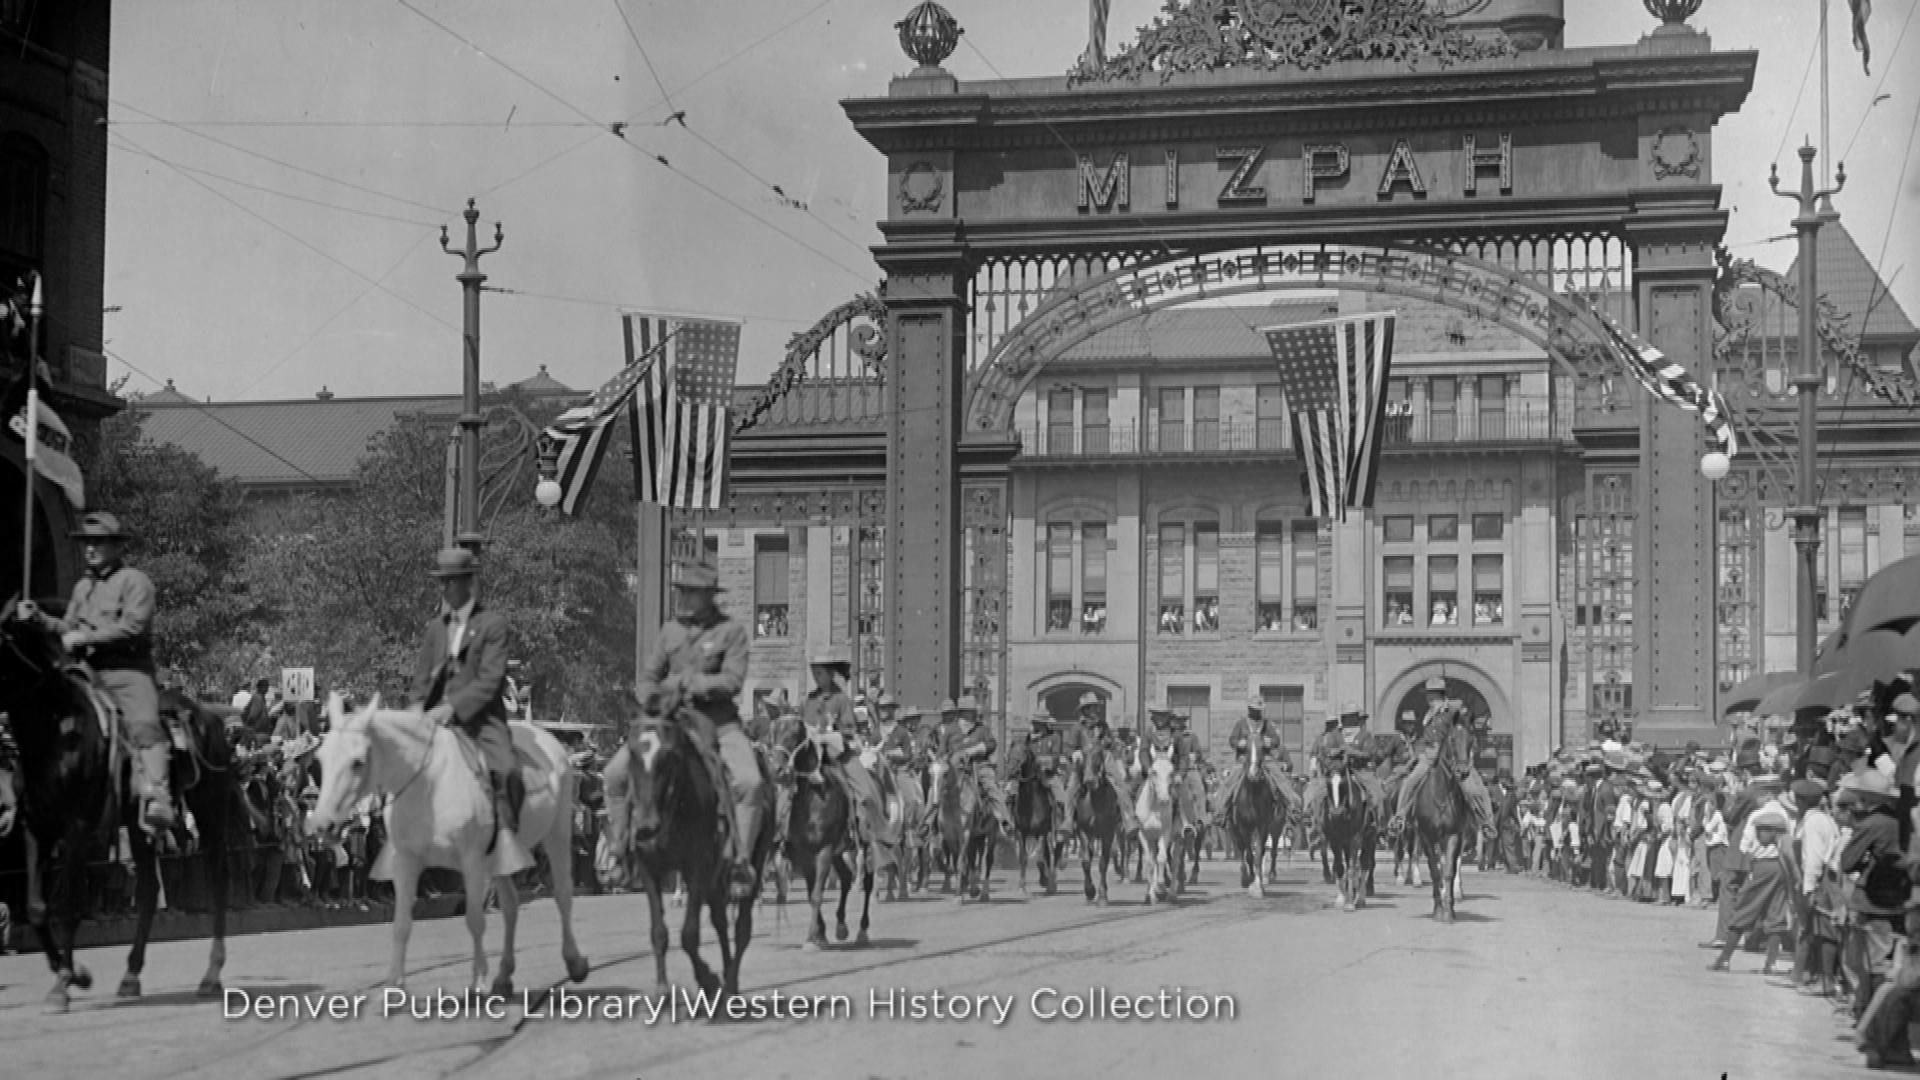 Union Station's arch (credit: Denver Public Library, Western History Collection)'s arch (credit: Denver Public Library, Western History Collection)